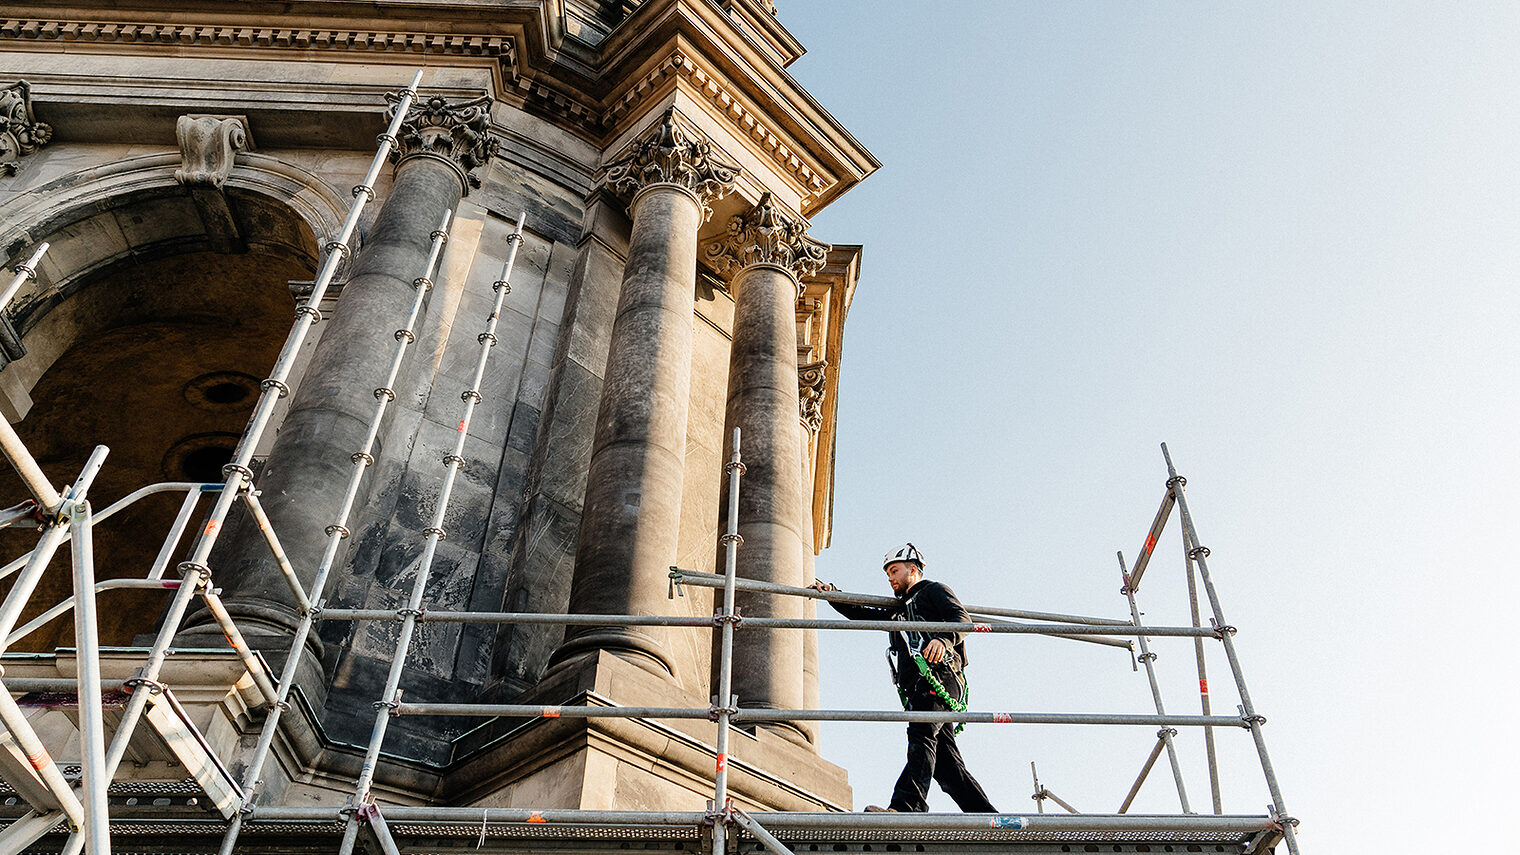 Ein Gerüstbauer läuft auf einem Gerüst entlang mit einer Gerüststange. Das Gerüst befindet sich an einem historischen Gebäude in Berlin. 